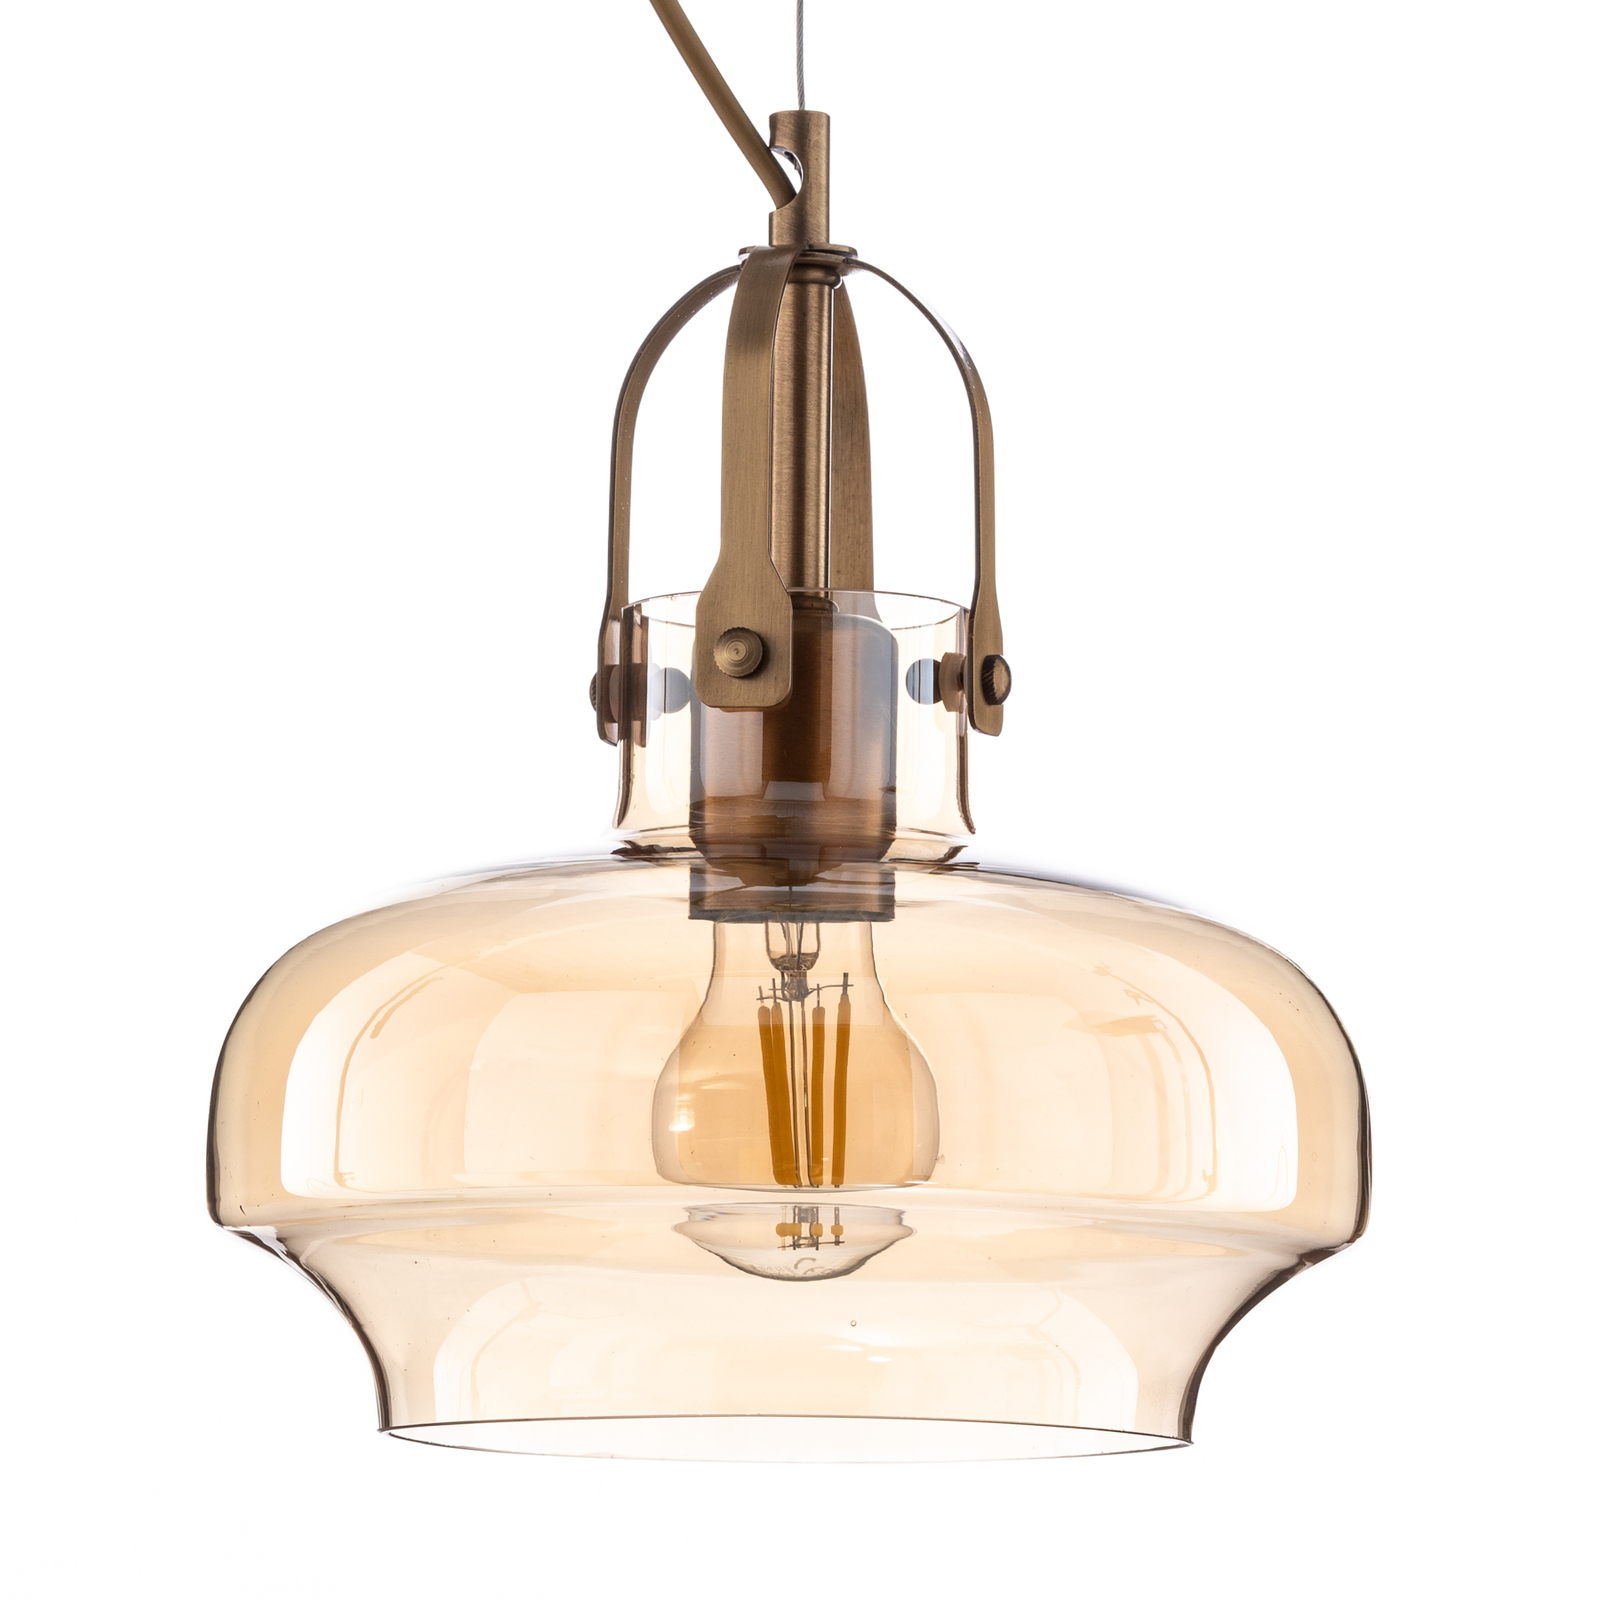 AV-1860-4EY pendant light, tinted glass lampshade